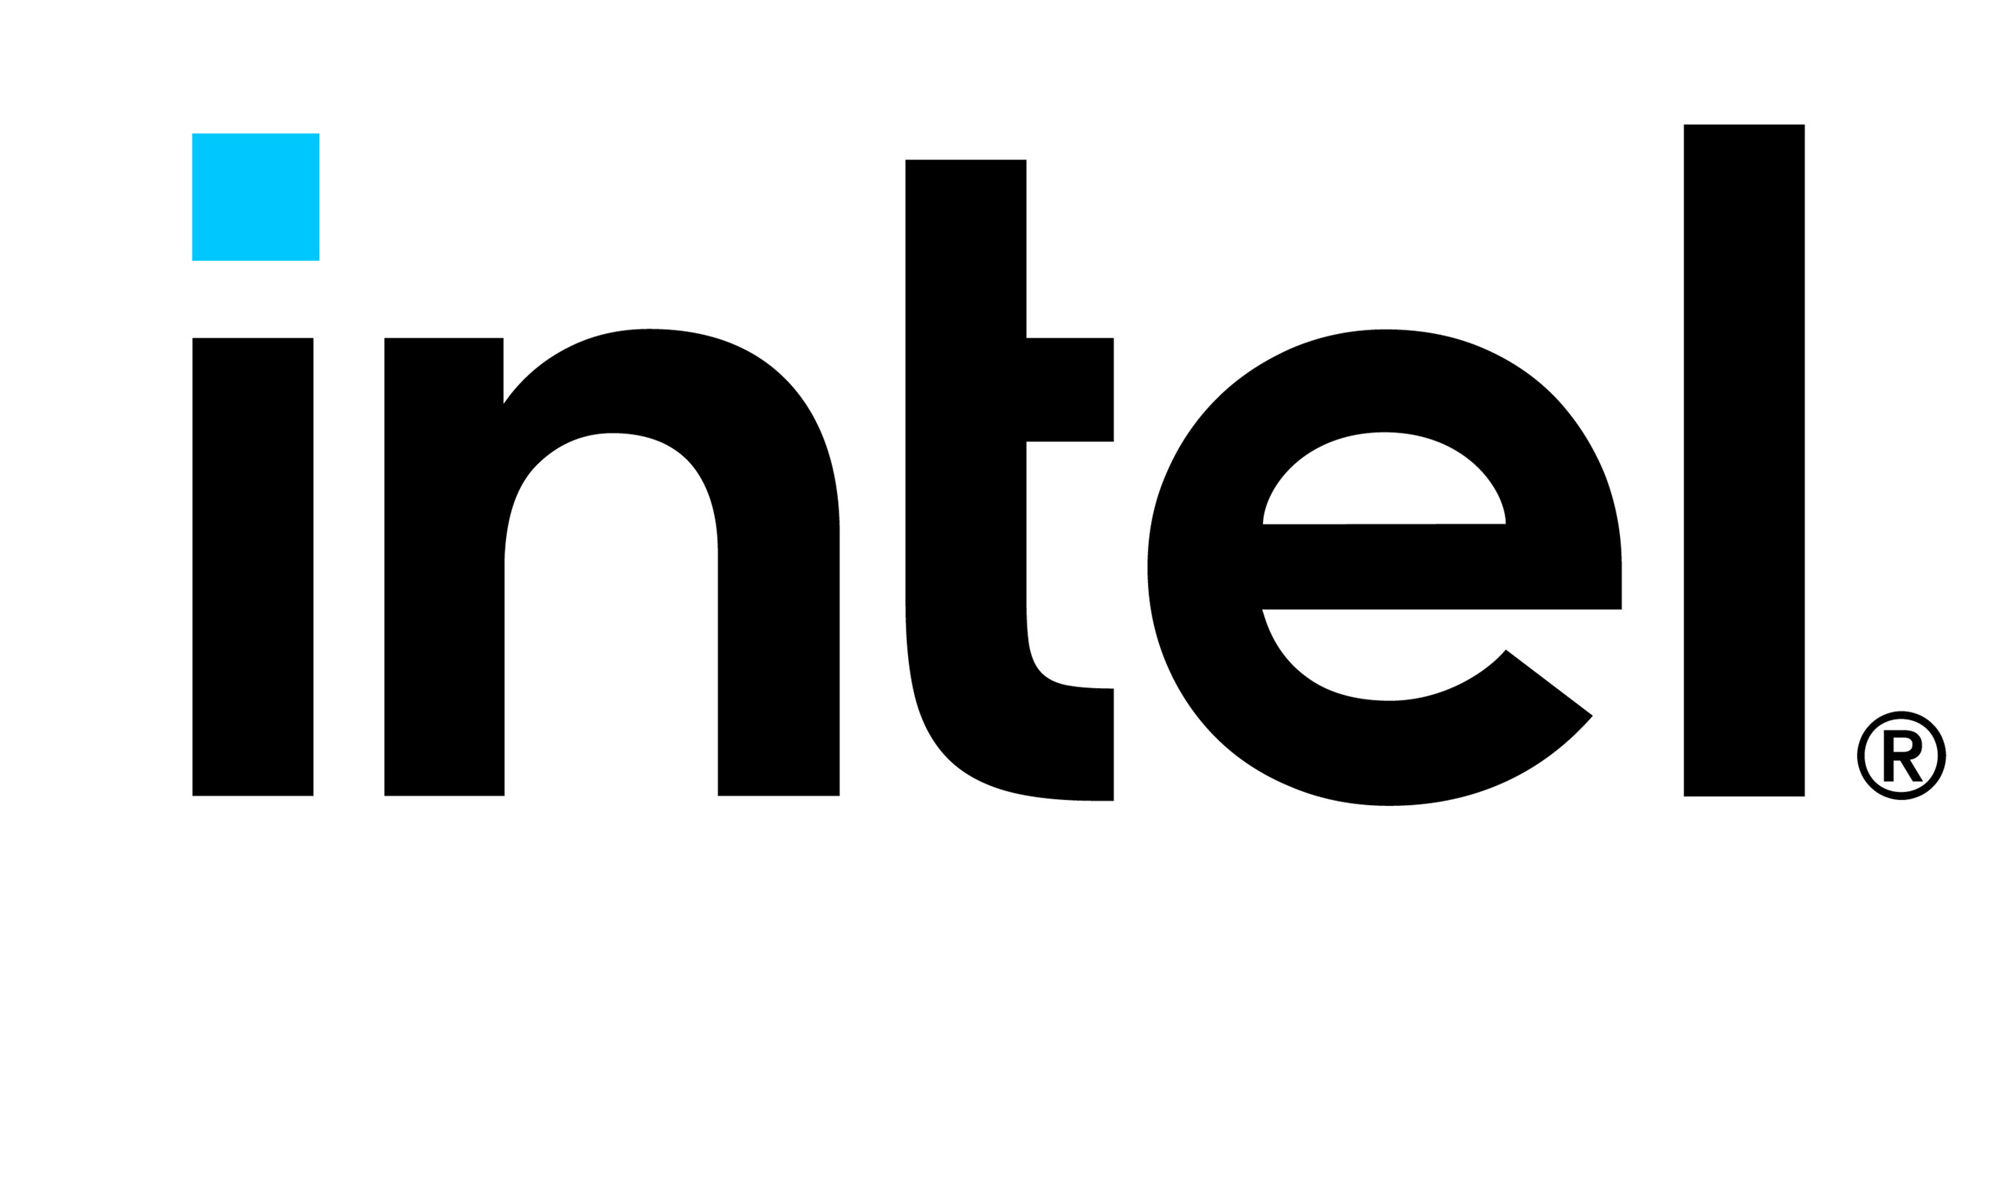 Intelのロゴ